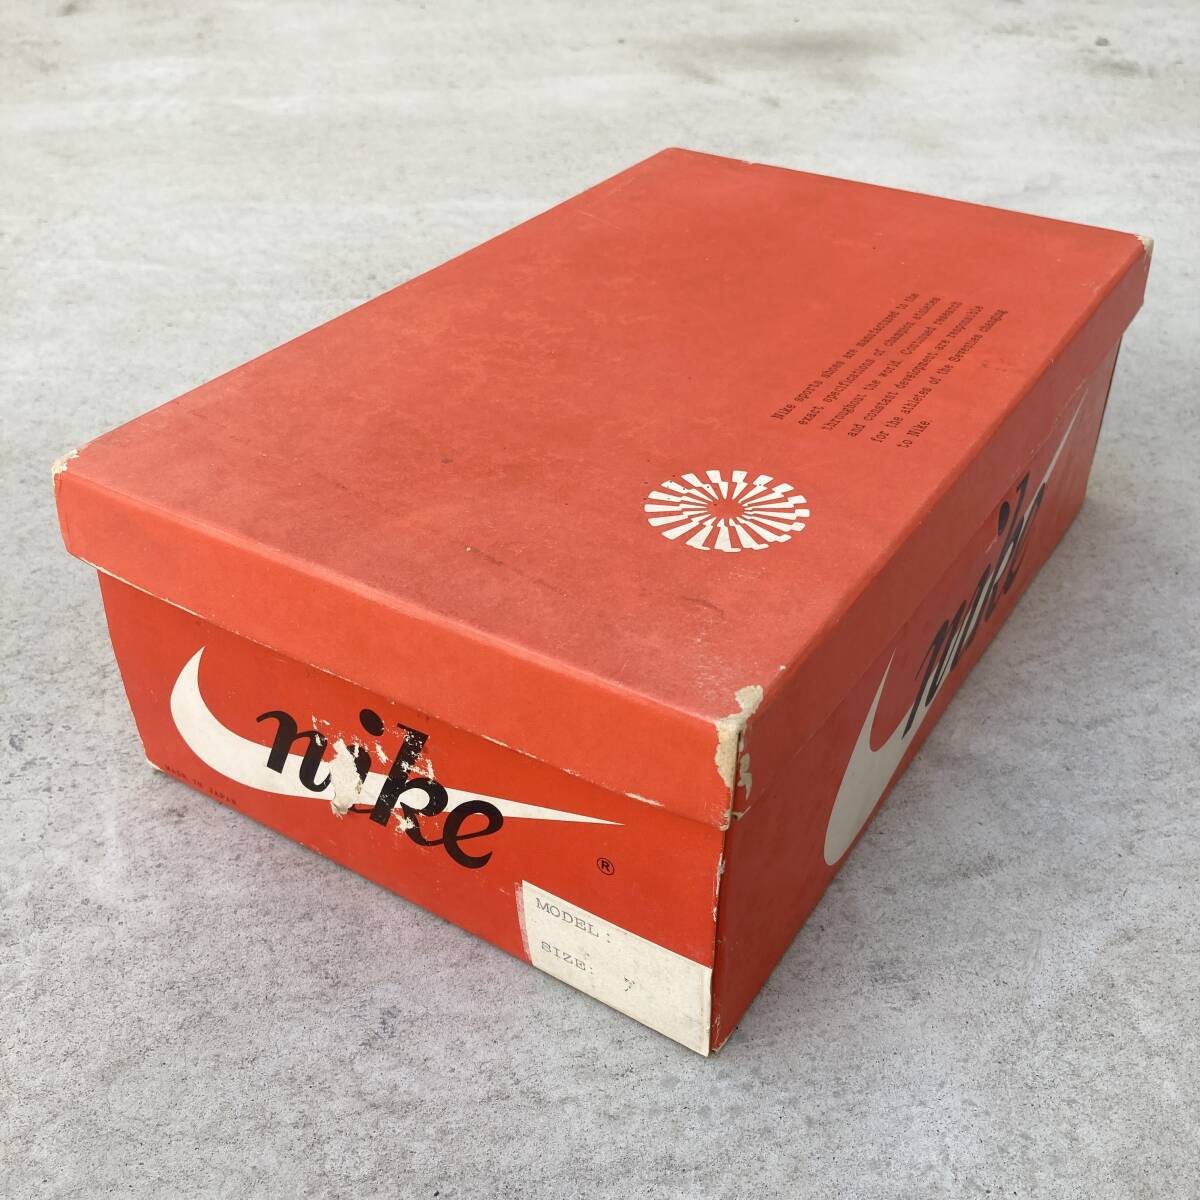 【稀少】Made in Japan 1970年代 ヴィンテージ Nike 空靴箱 / 1970's Vintage Nike Shoe Box empty_画像2